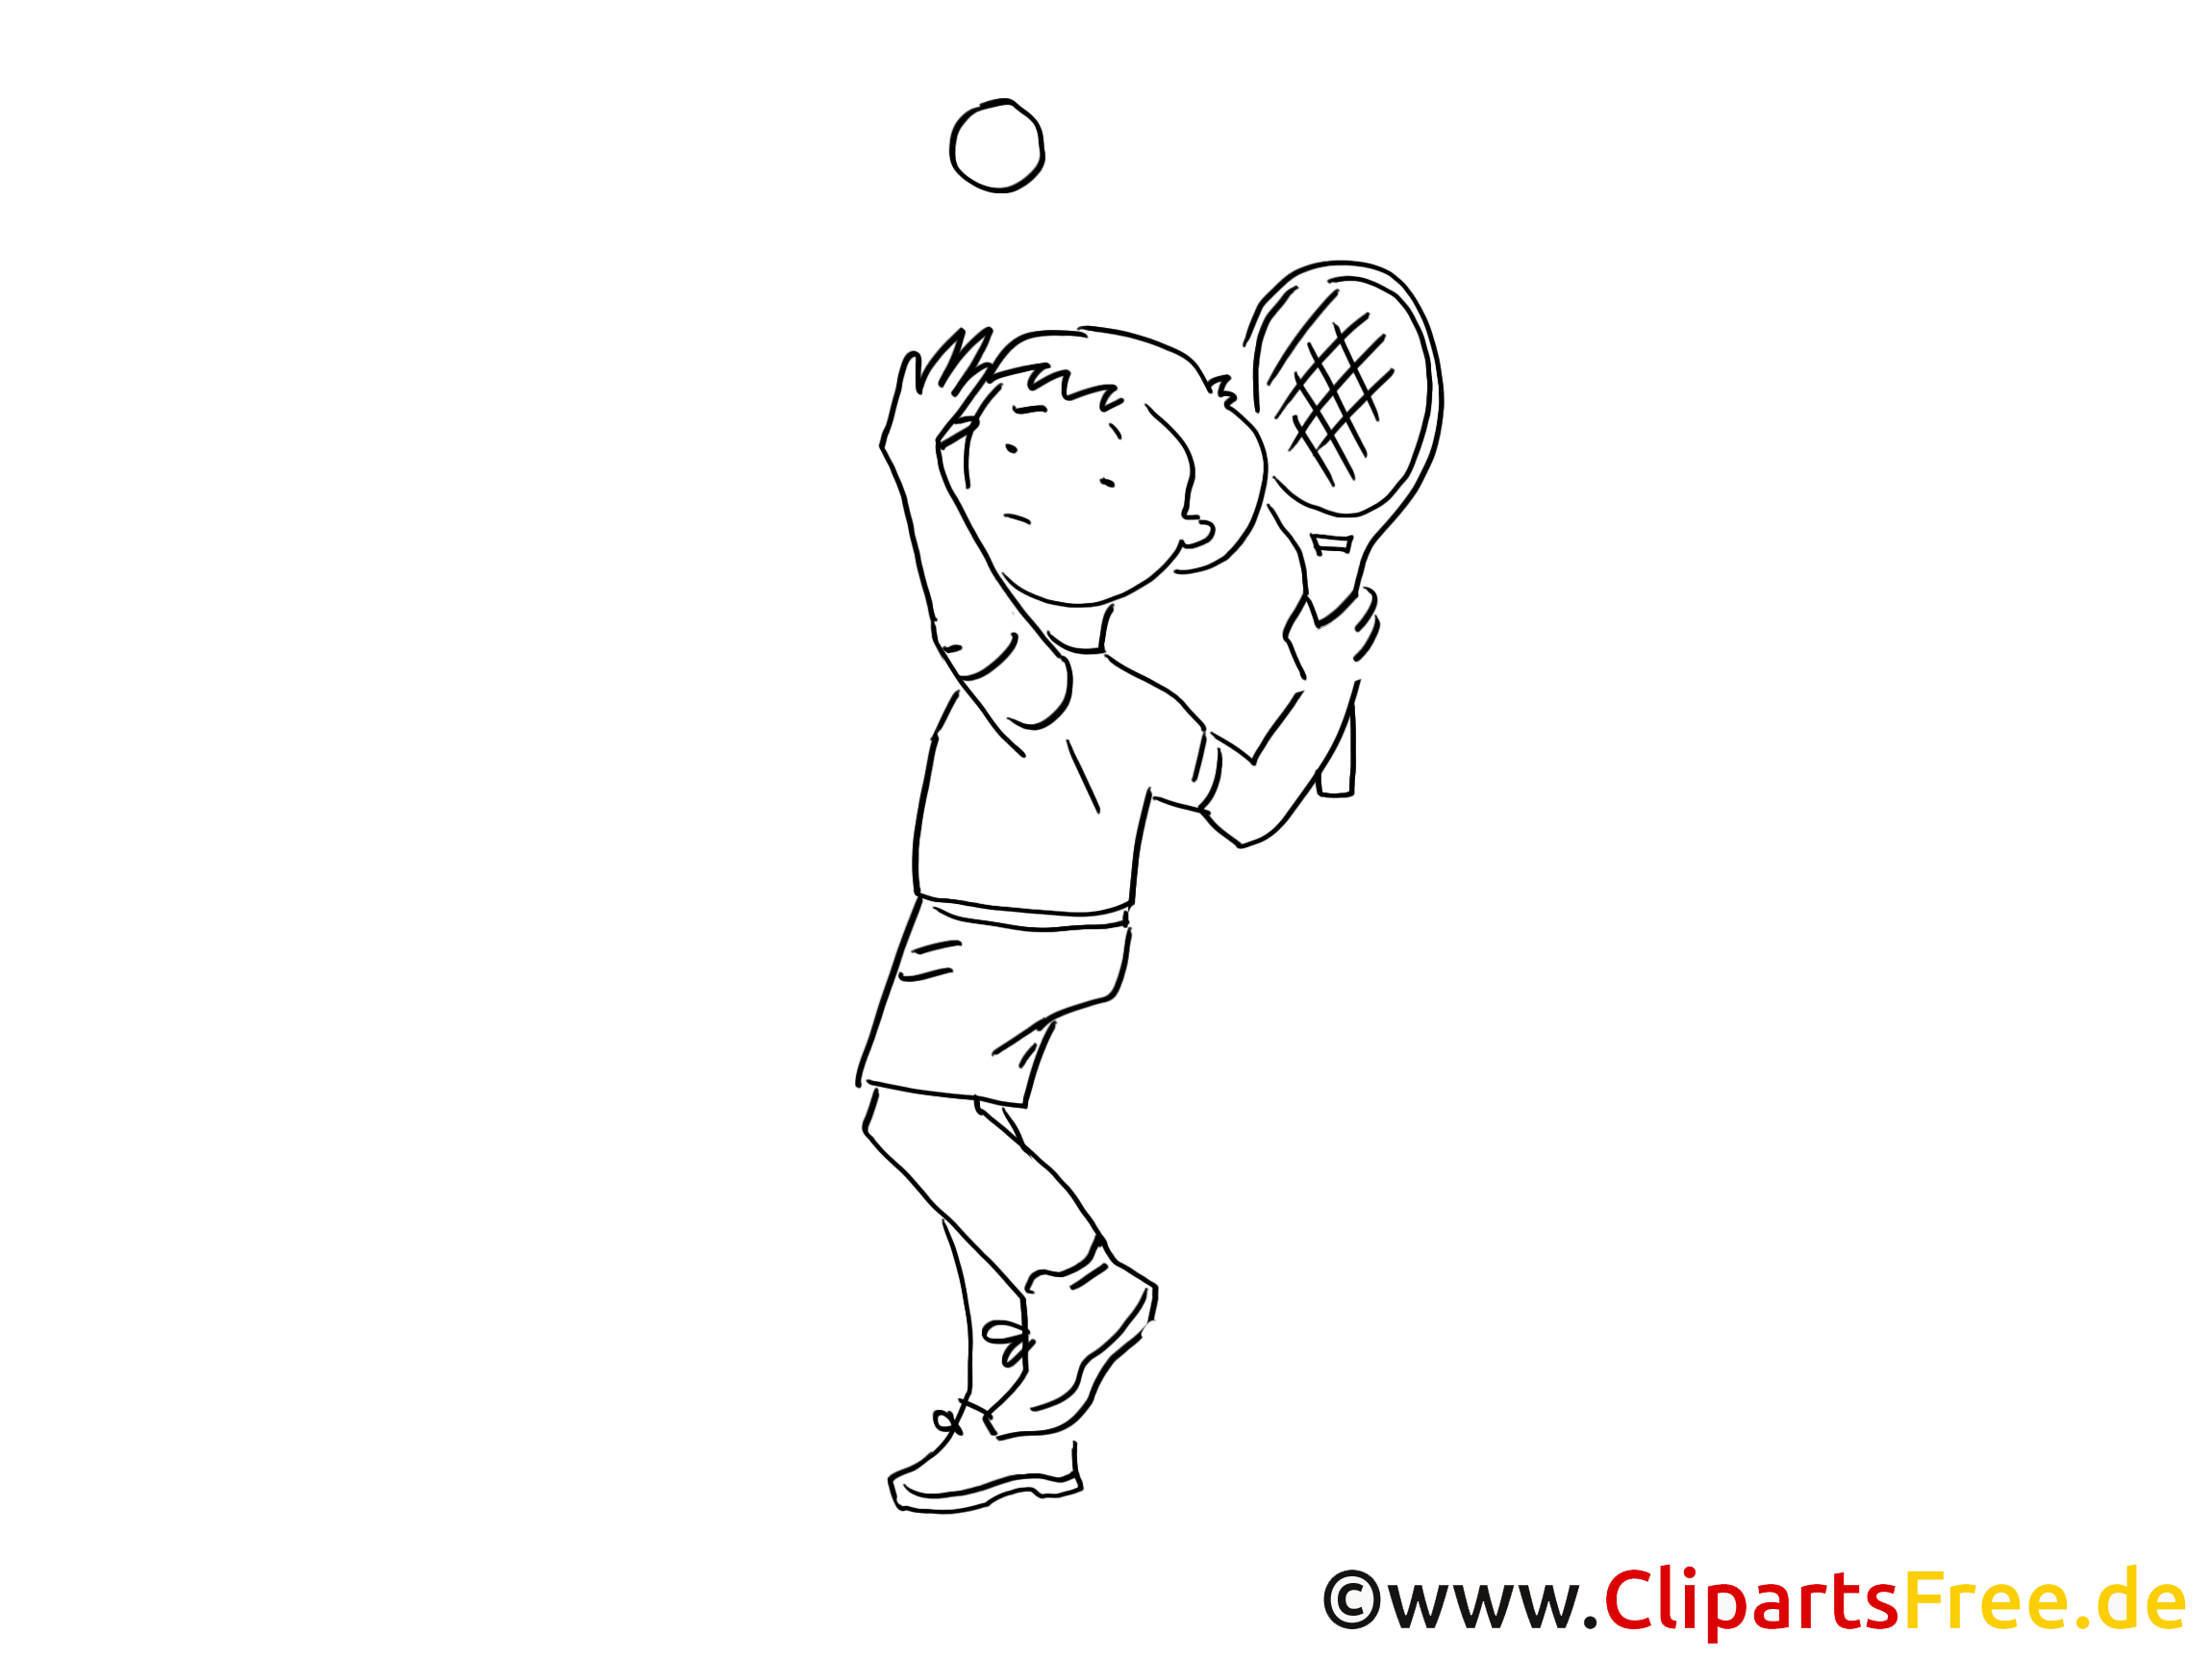 clipart gratuit tennis - photo #33